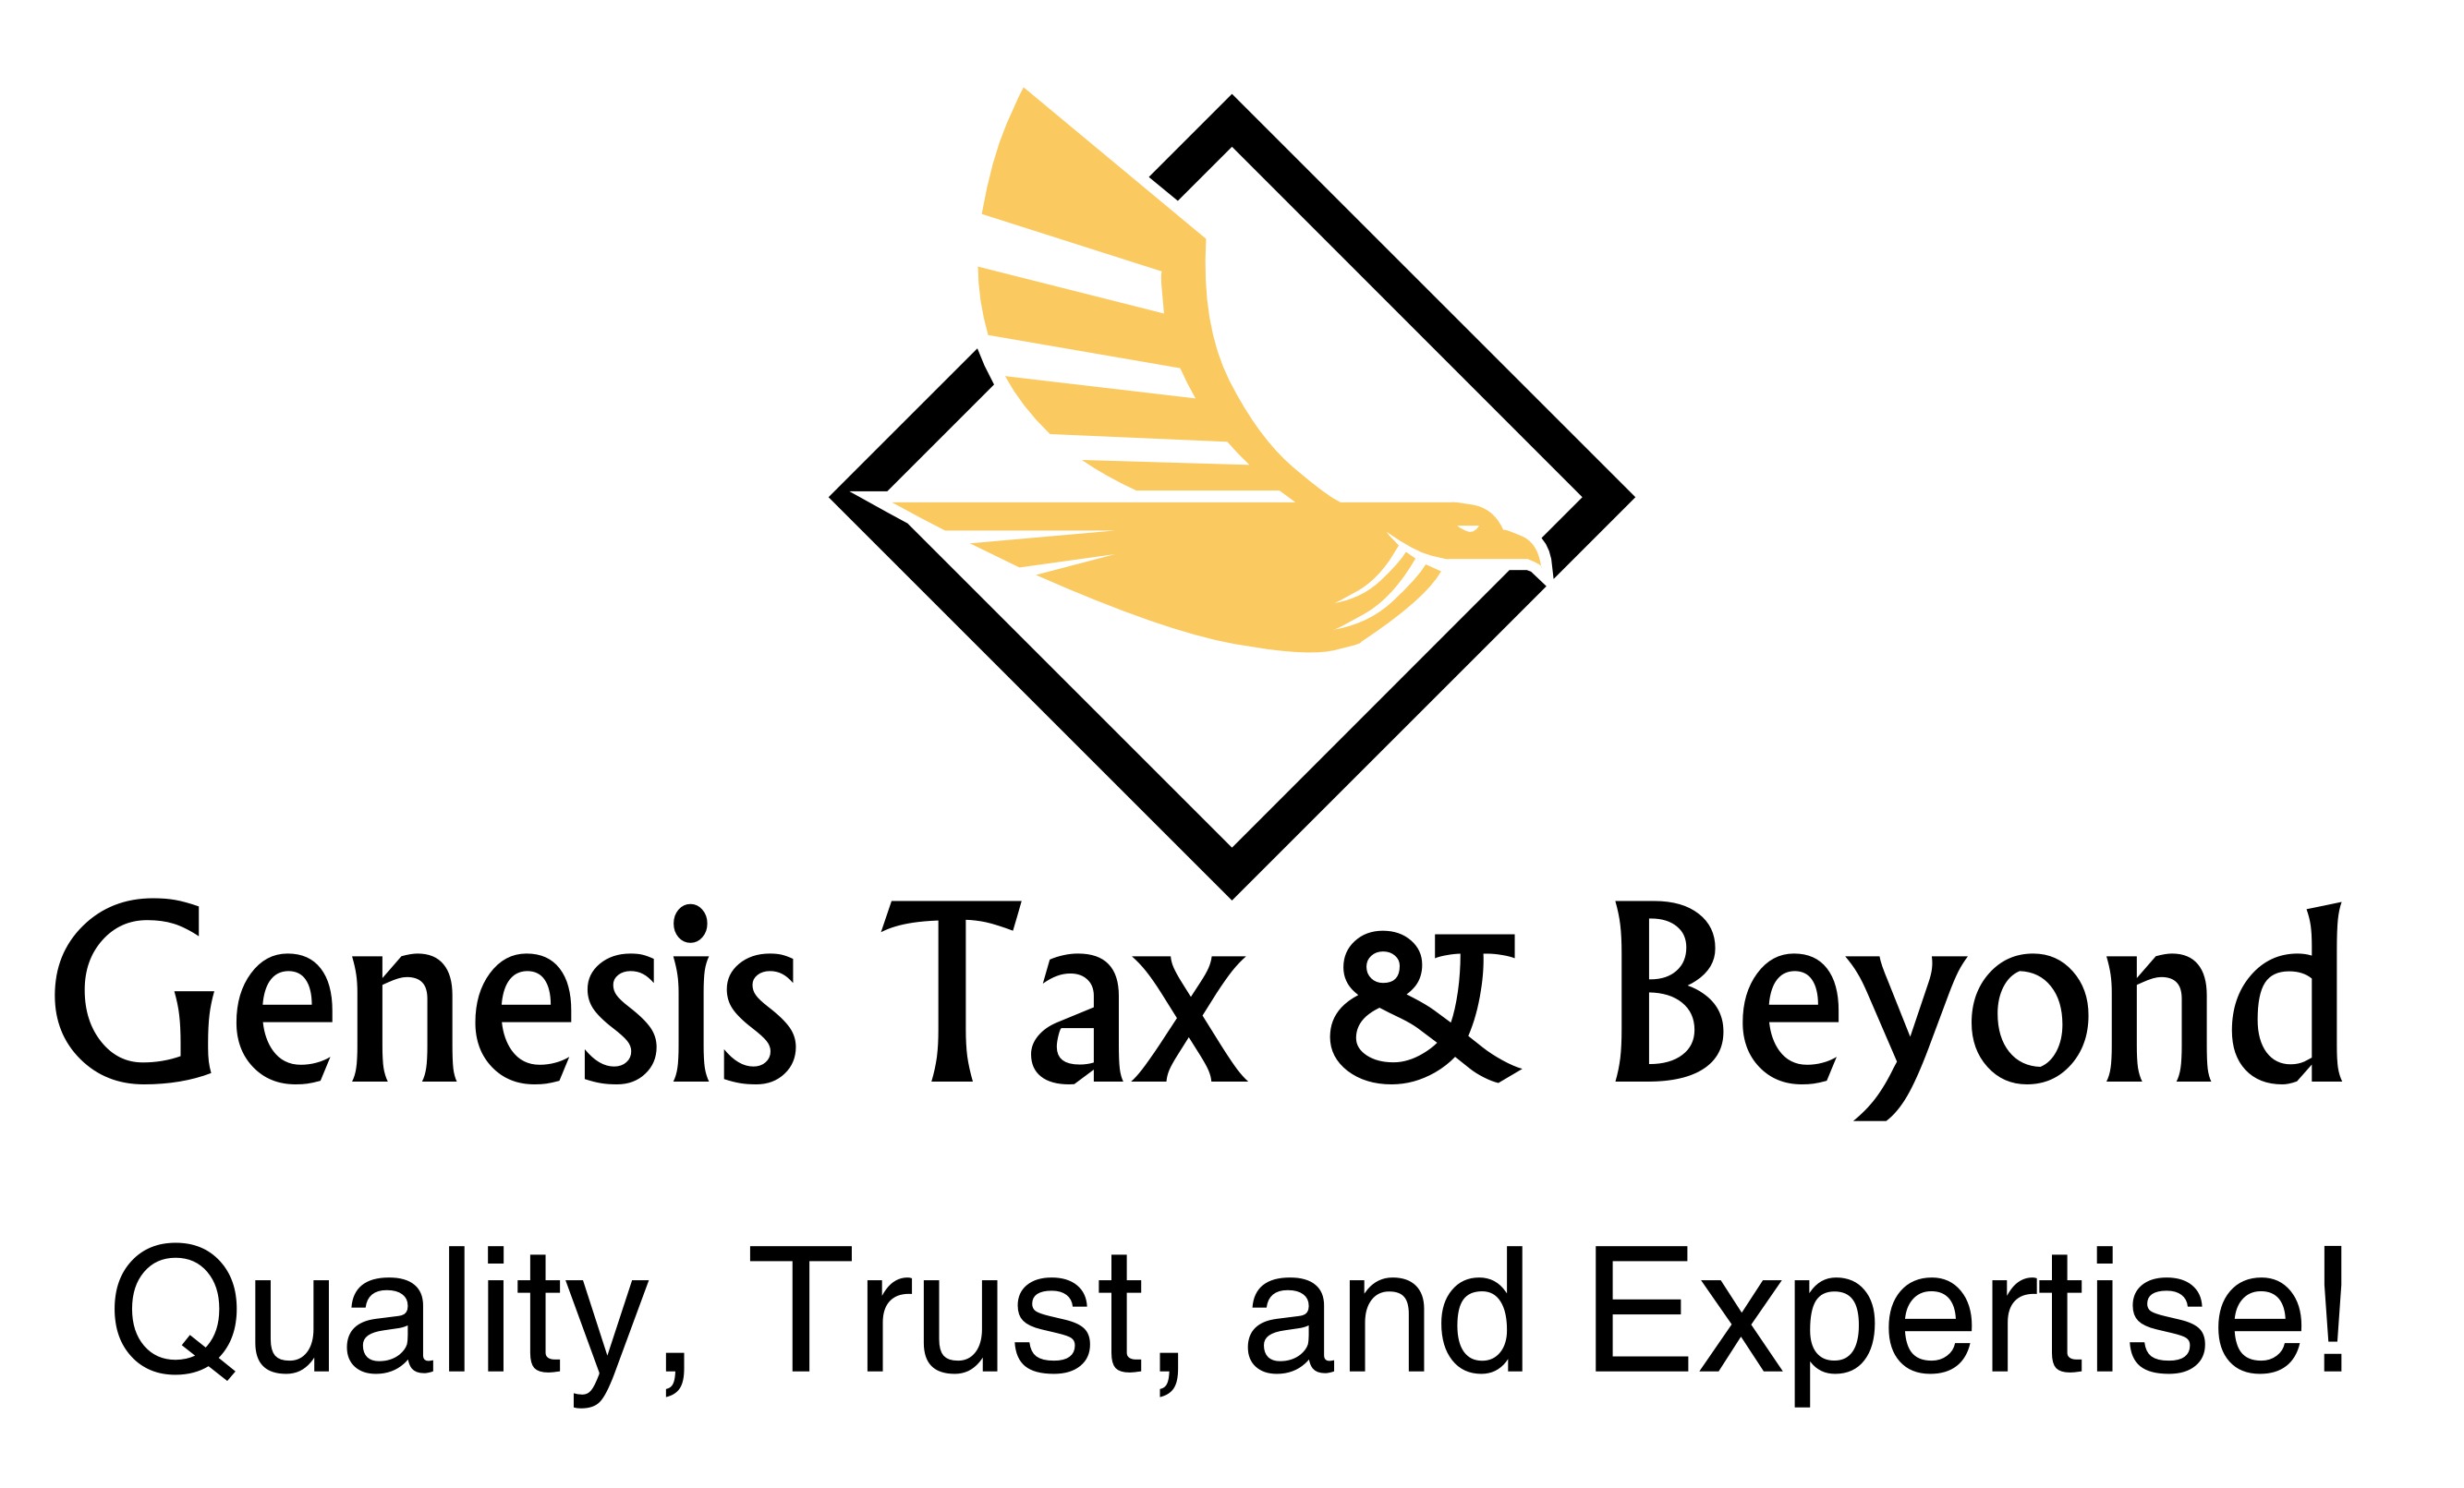 Genesis Tax & Beyond